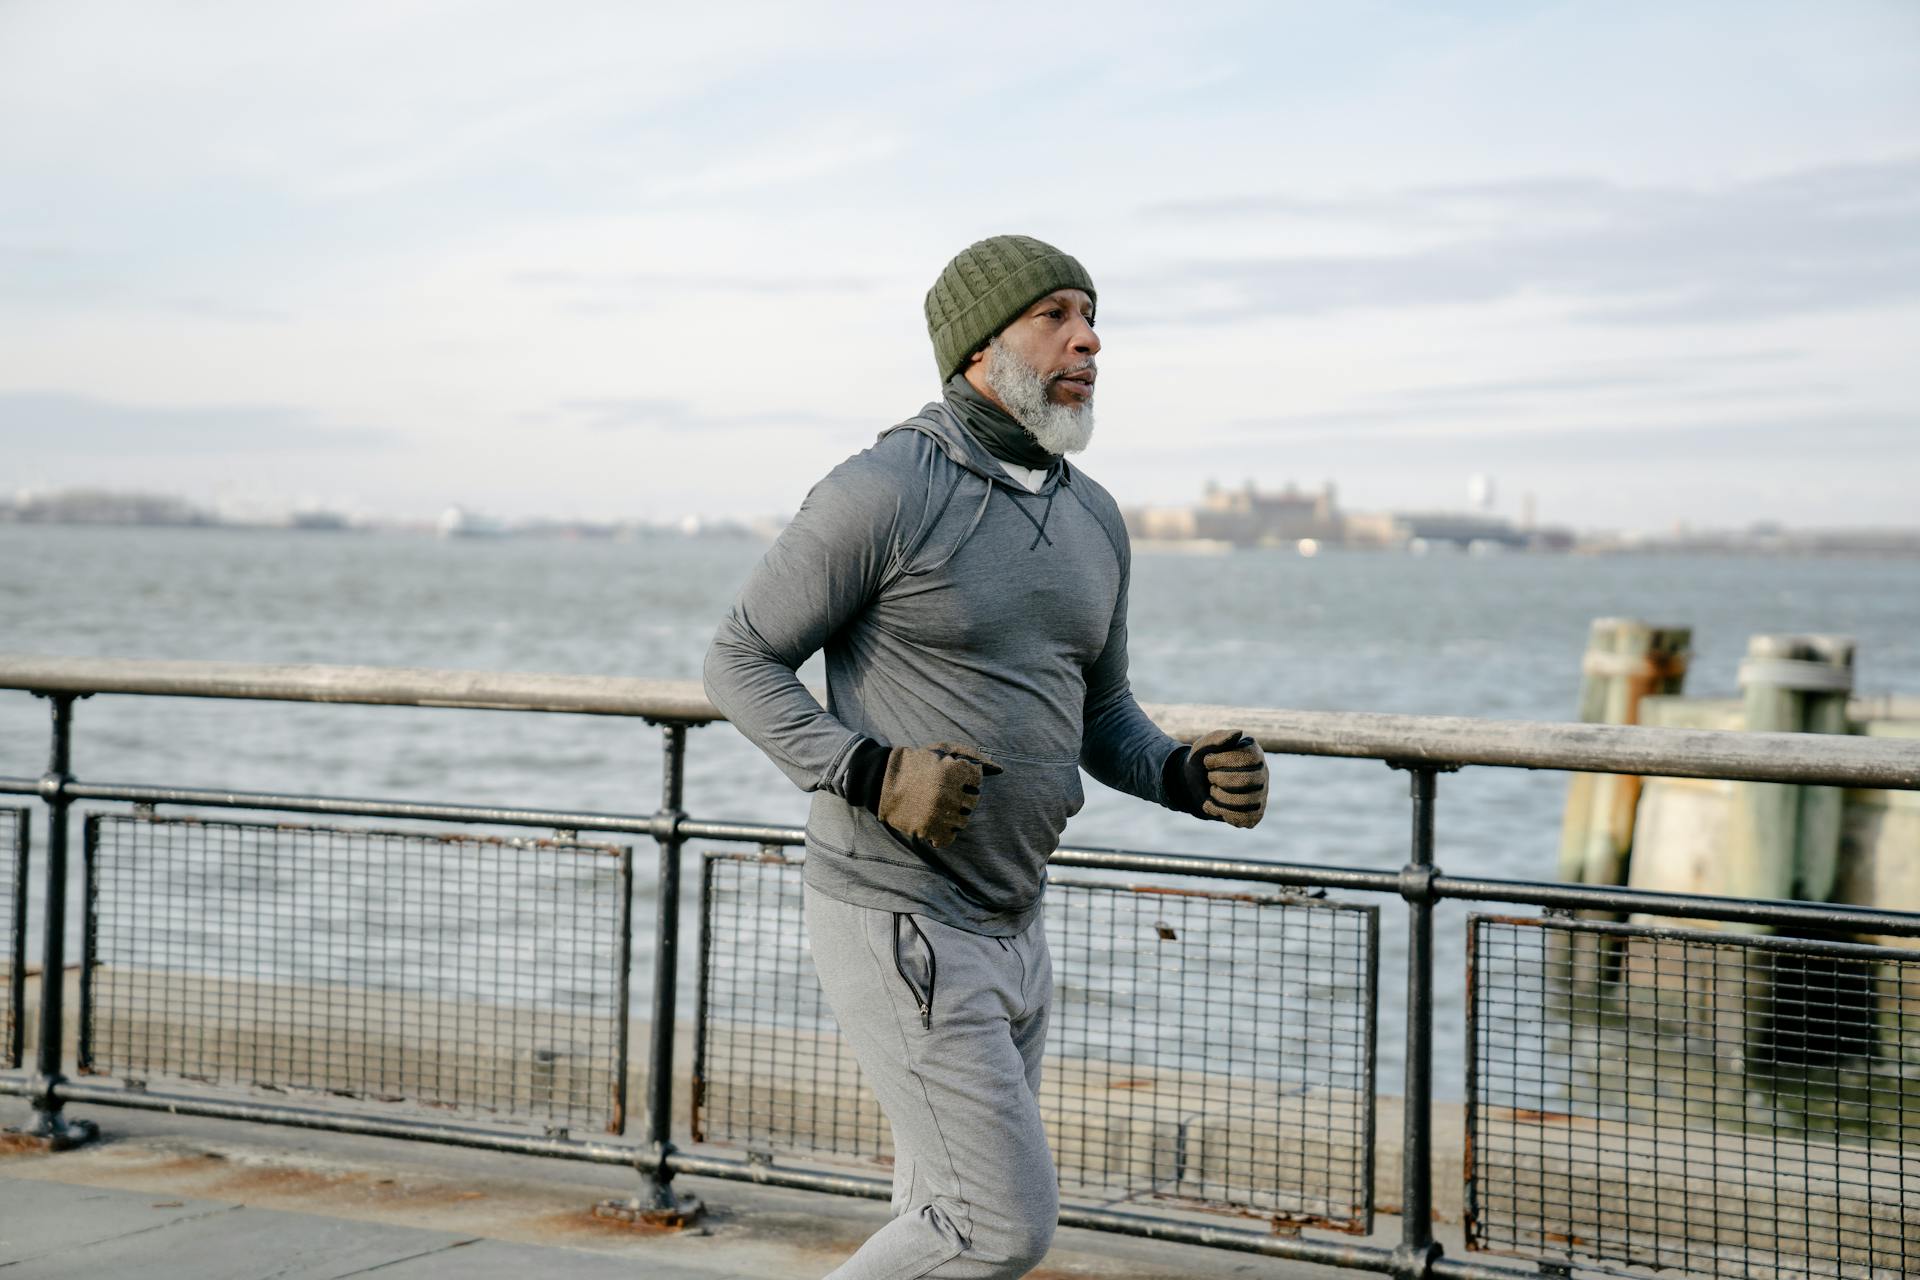 Vieil homme faisant son jogging | Source : Pexels